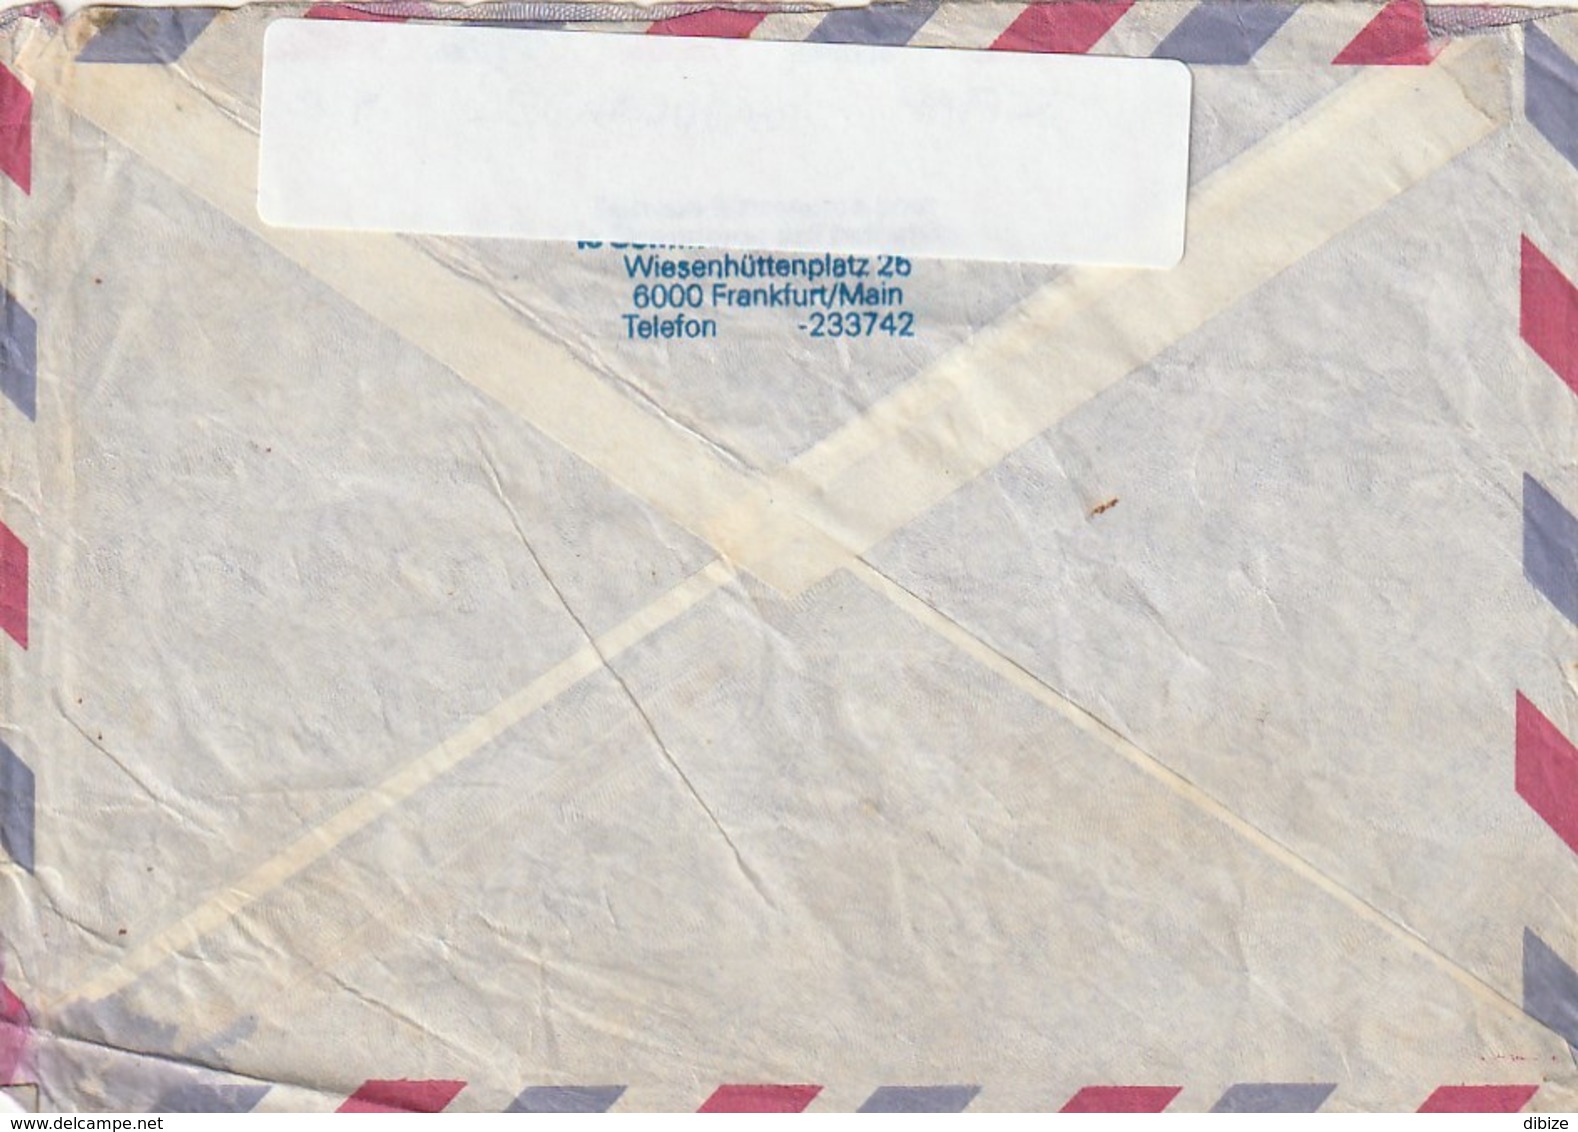 Berkanes Marokkanischer Stempel Von Berkane Auf 2 Deutschen Briefmarken Luftpost Verschickt. Durchschnittlicher Zustand - Oddities On Stamps